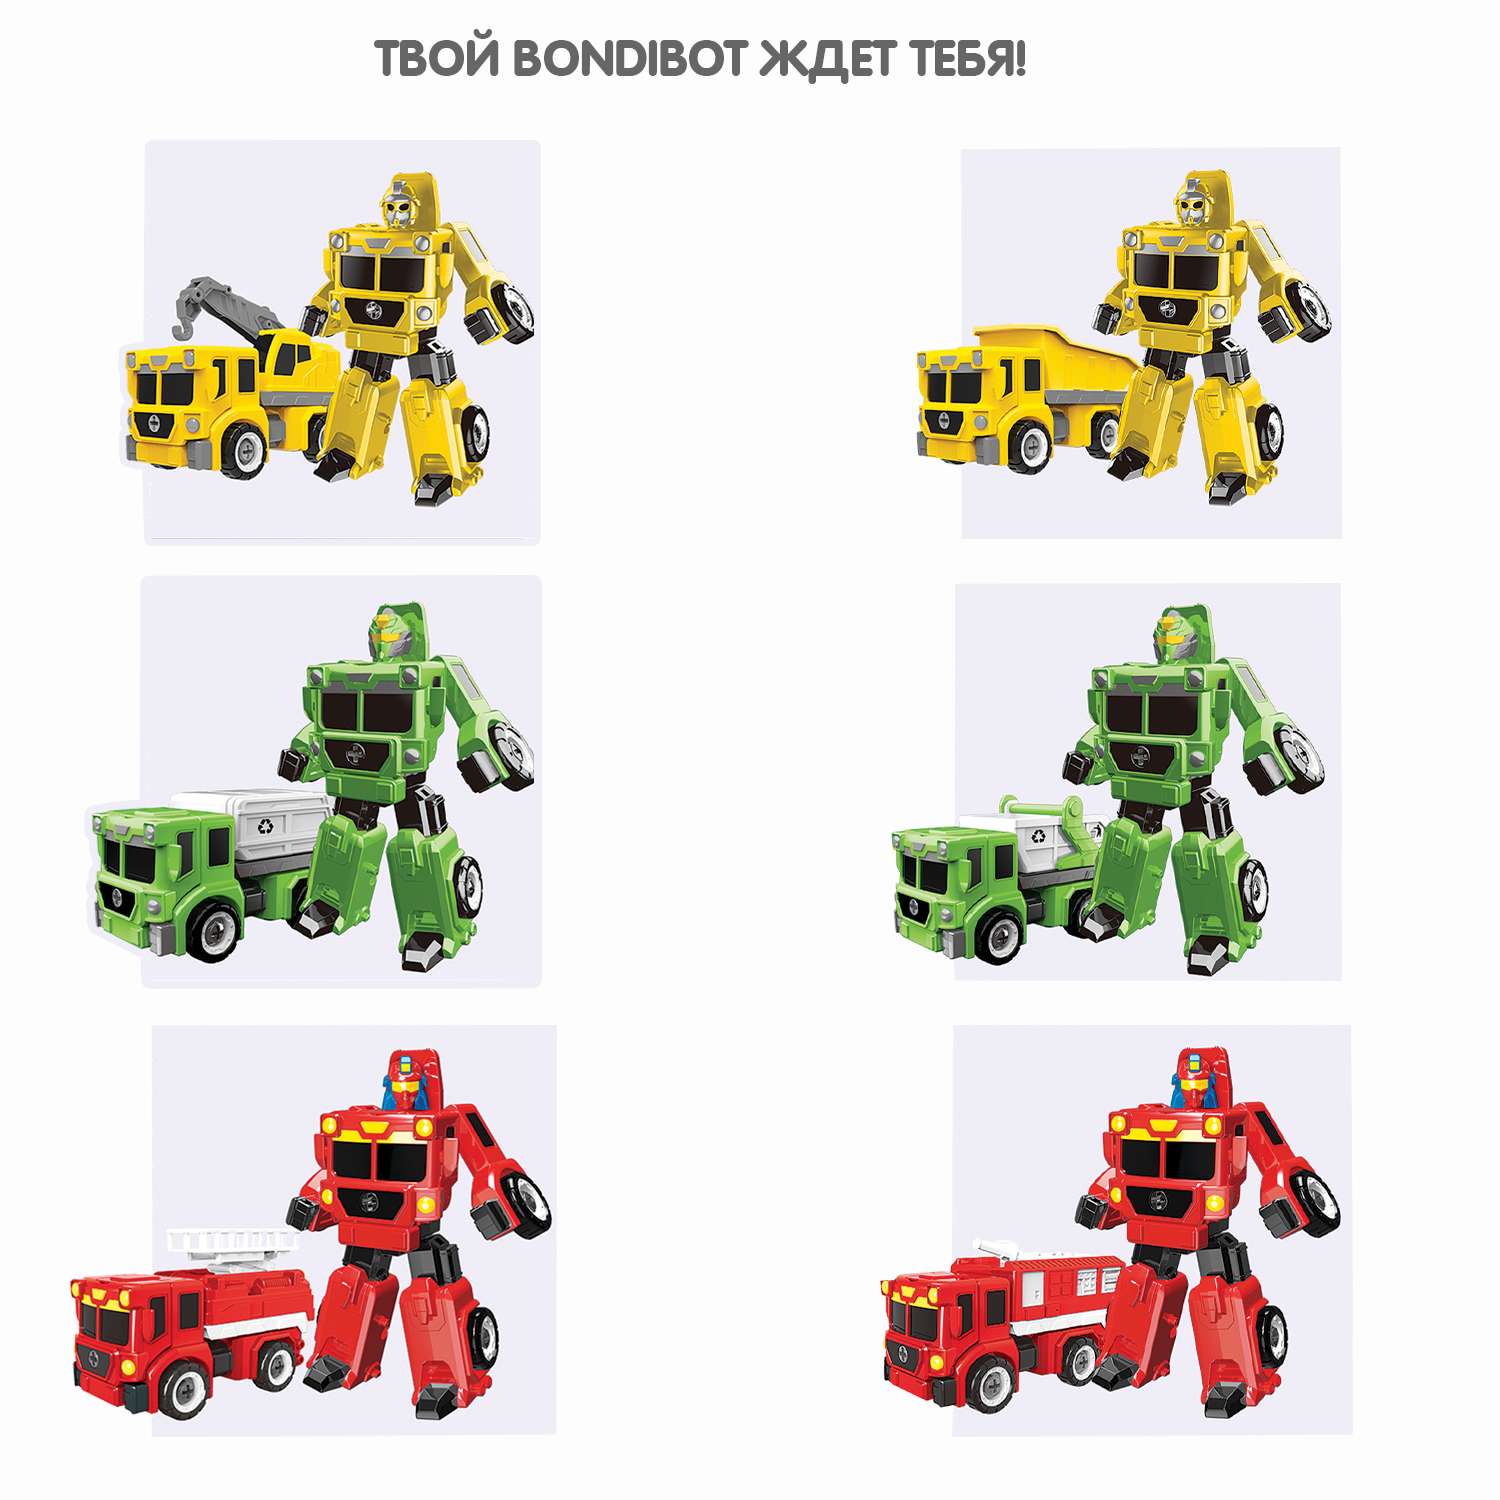 Трансформер-конструктор BONDIBON Bondibot Робот-мусоровоз 2 в 1 зеленого цвета с отвёрткой - фото 9